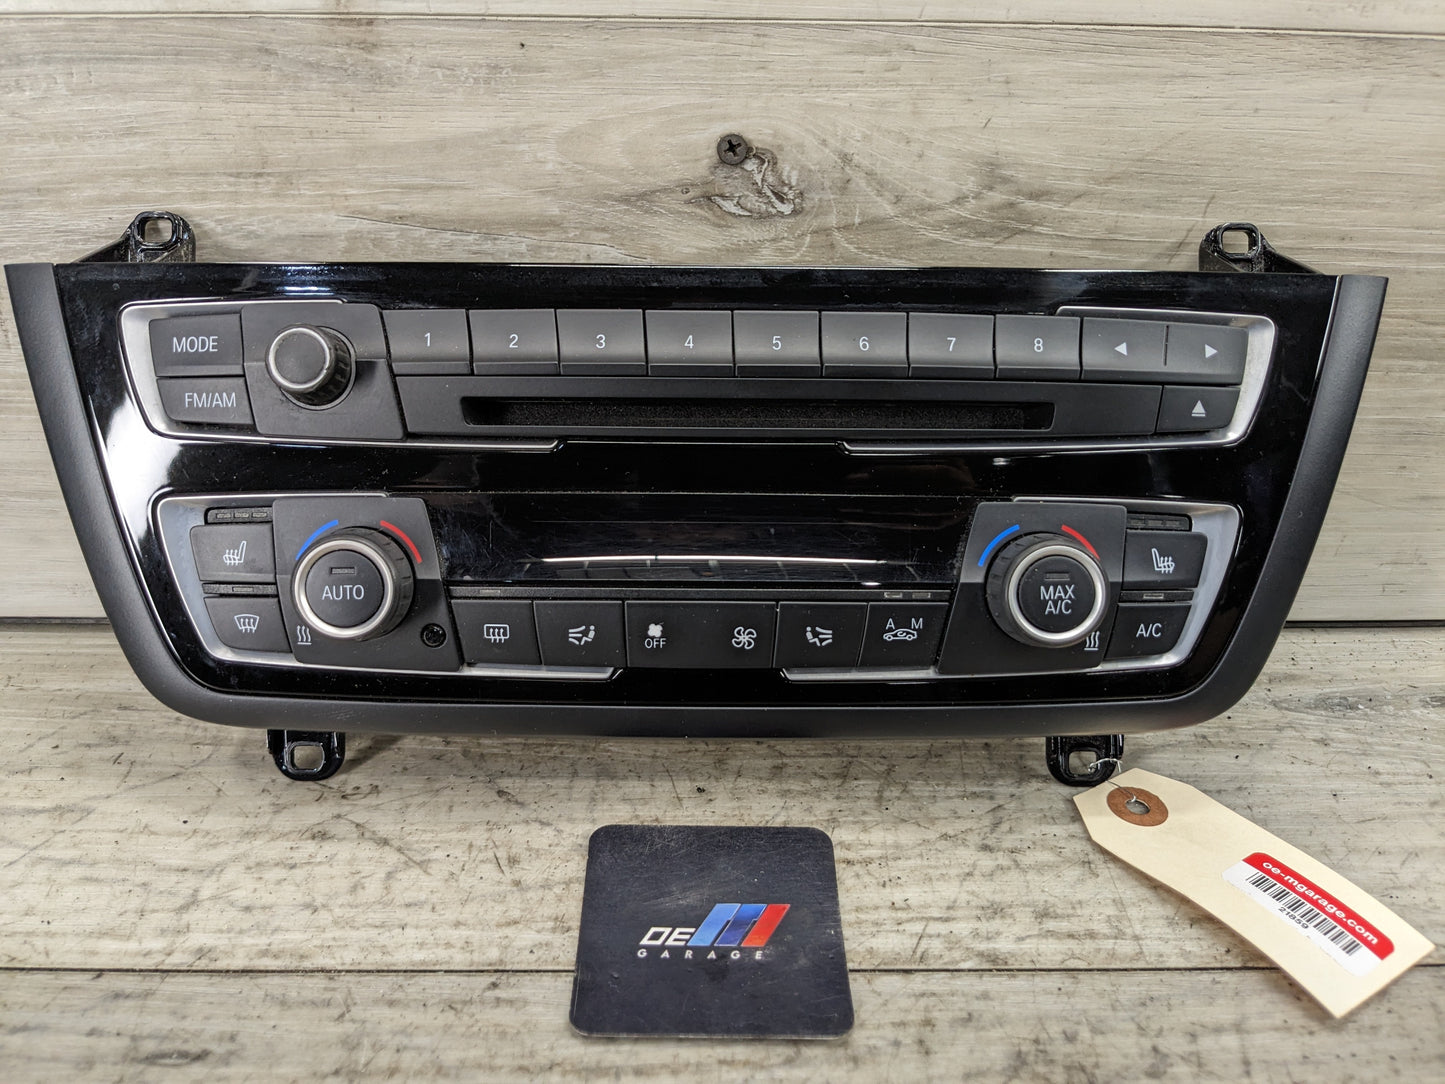 12-15 OEM BMW F22 F80 F30 F32 M3 M4 AC Heater Control Panel Radio Media Buttons